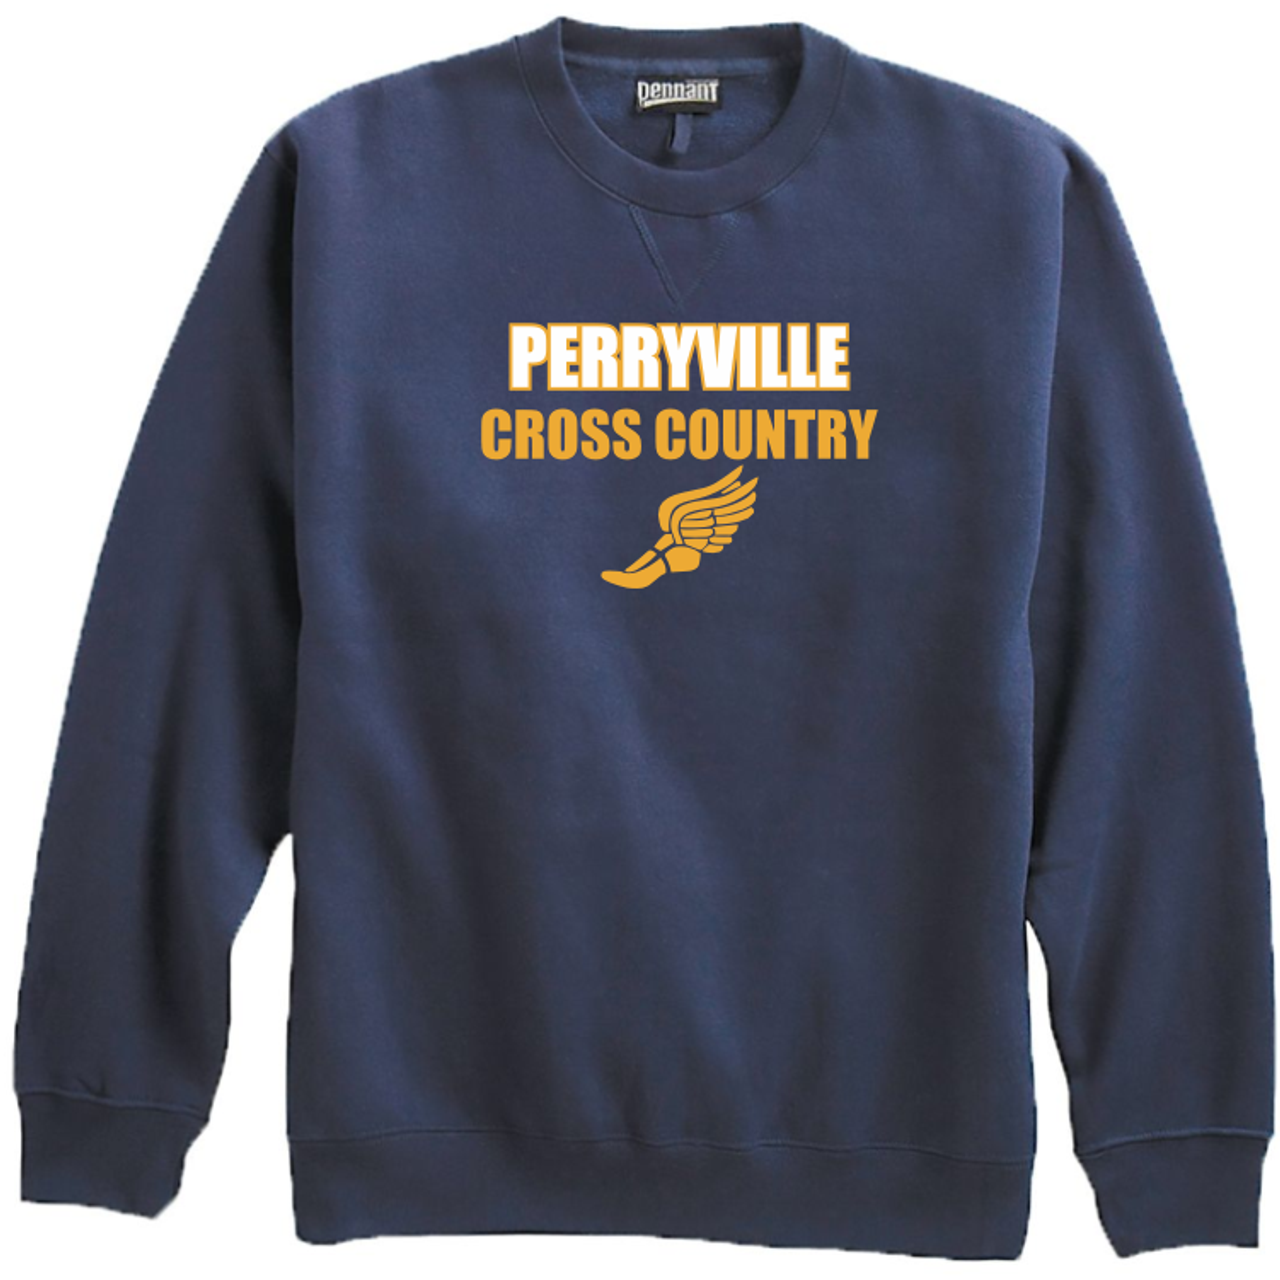 Perryville MS Cross Country Crewneck Sweatshirt, Navy